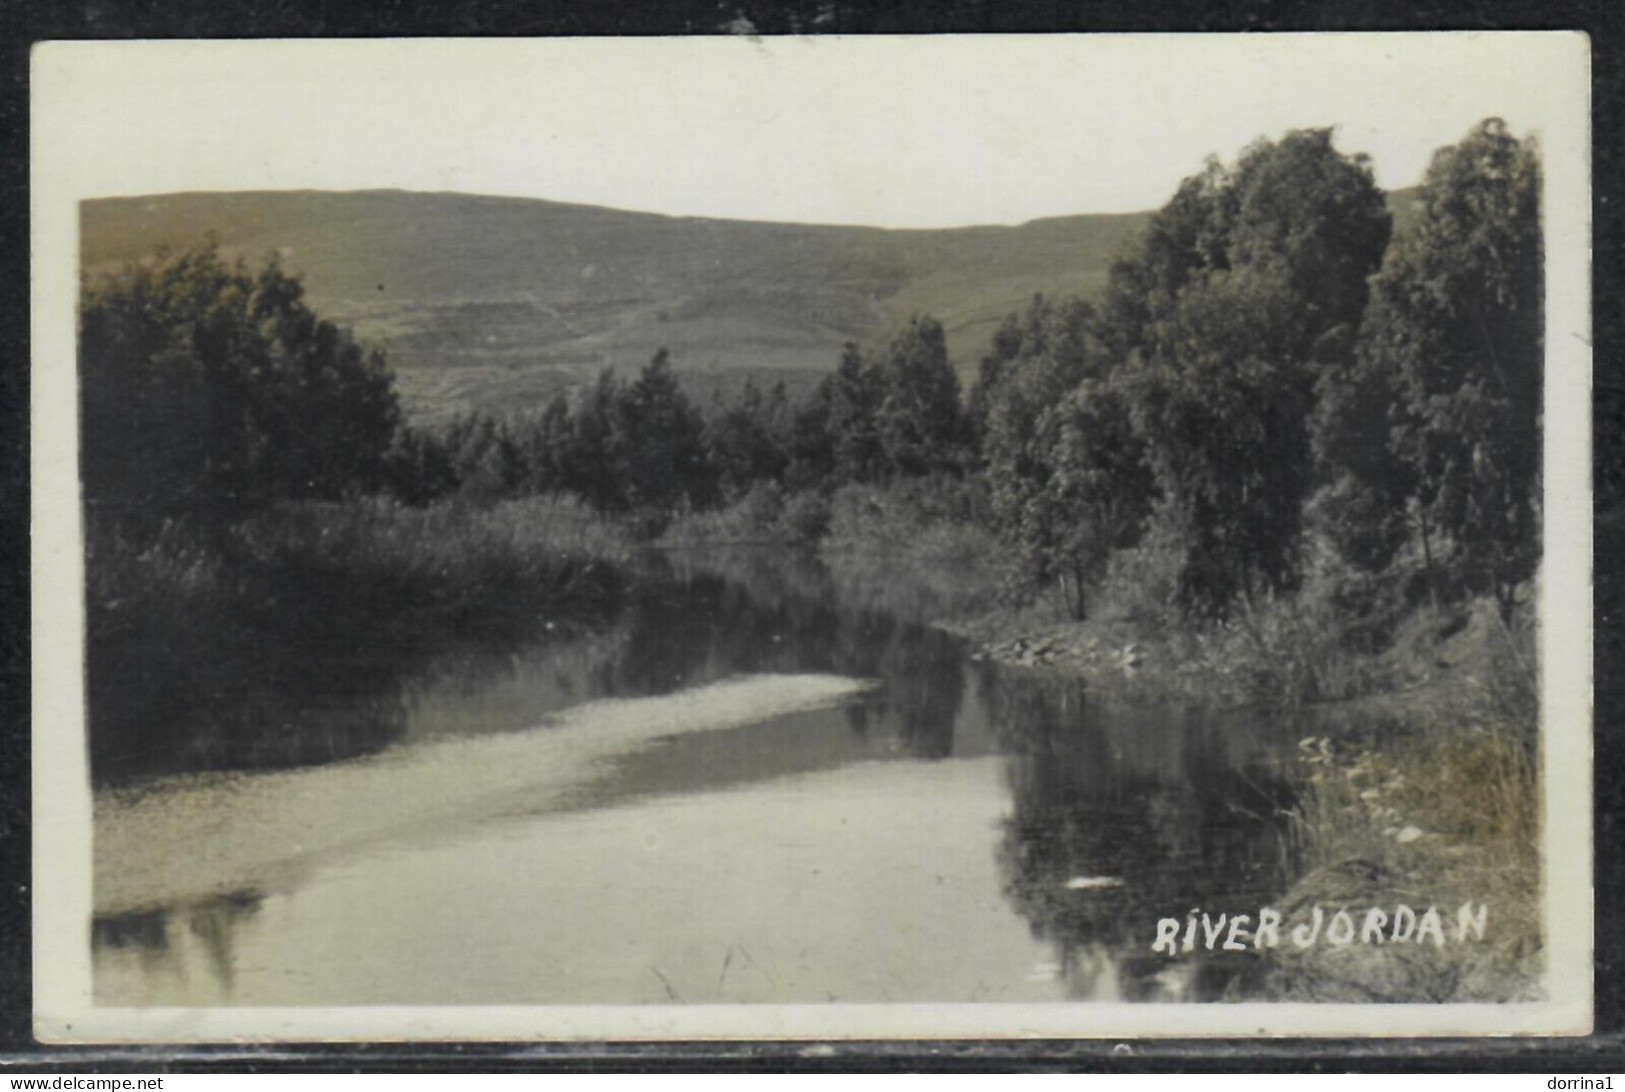 River Jordan - Israel Palestine B/w Photo Postcard - Palestine